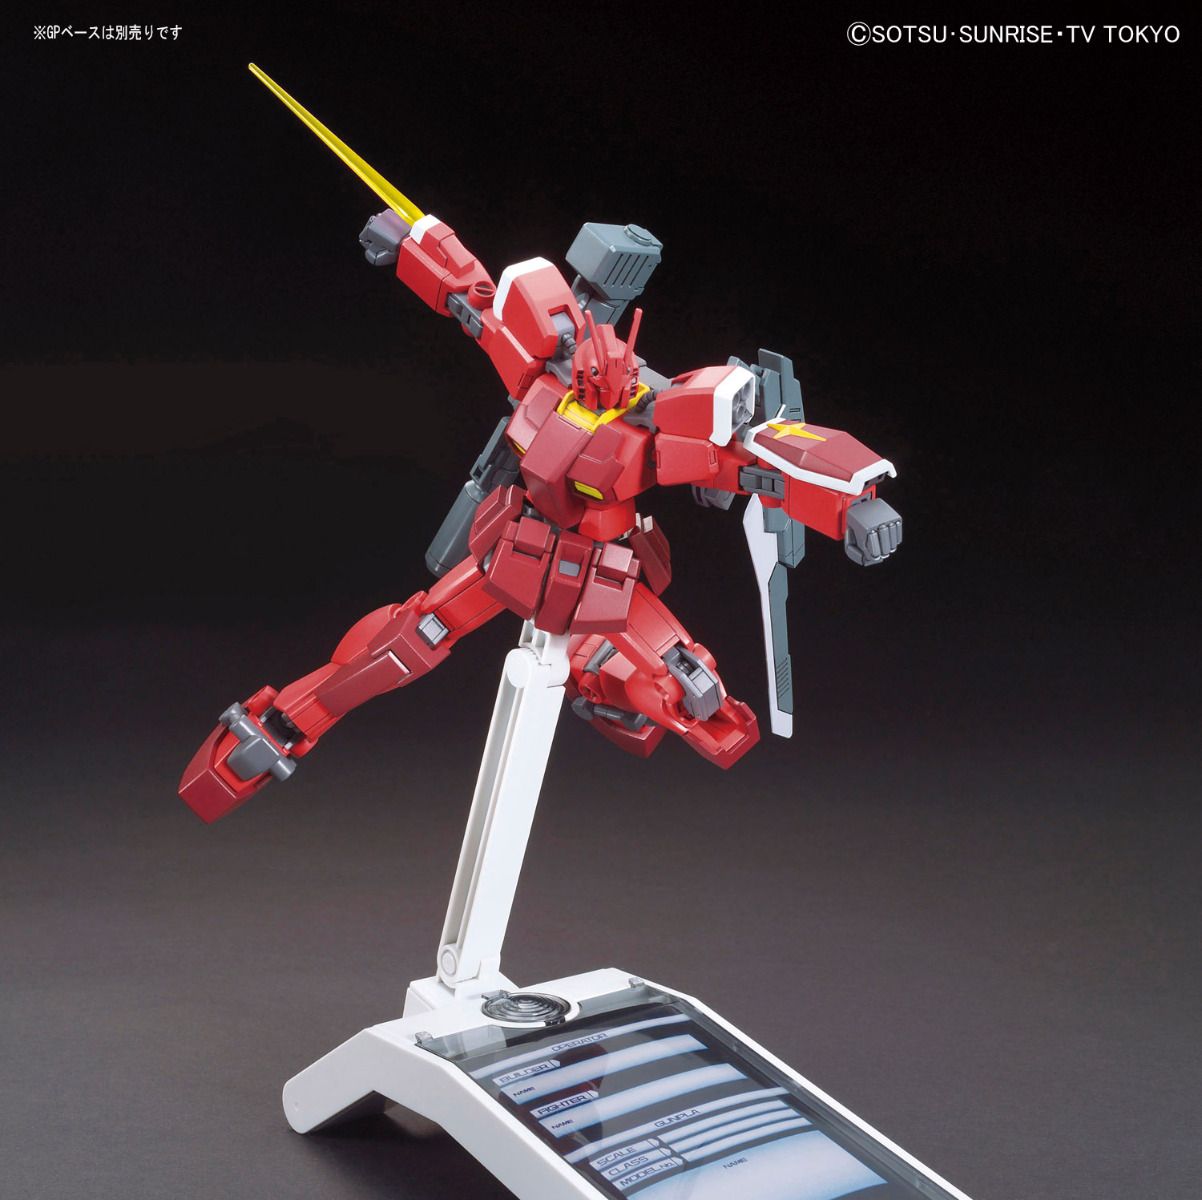 HGBF Gundam Amazing Red Warrior